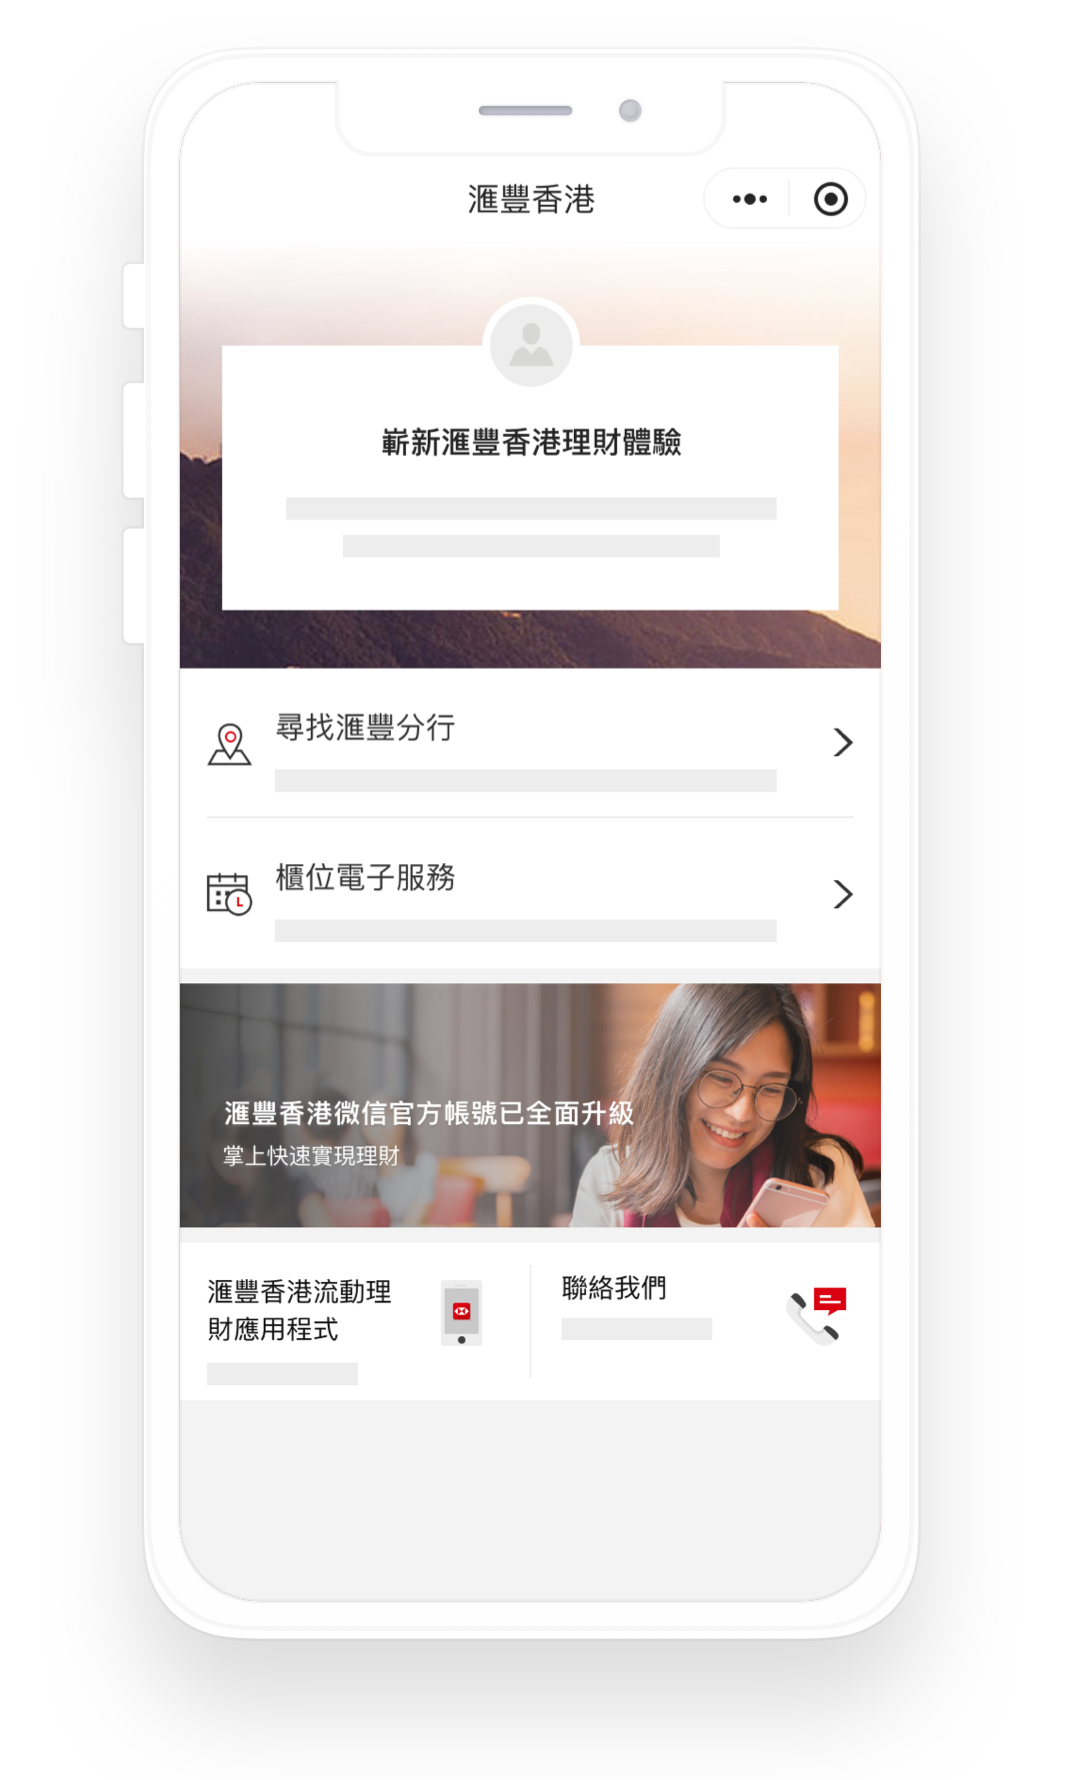 滙豐香港微信小程序界面的截圖；圖片使用於滙豐香港微信官方帳號頁面。